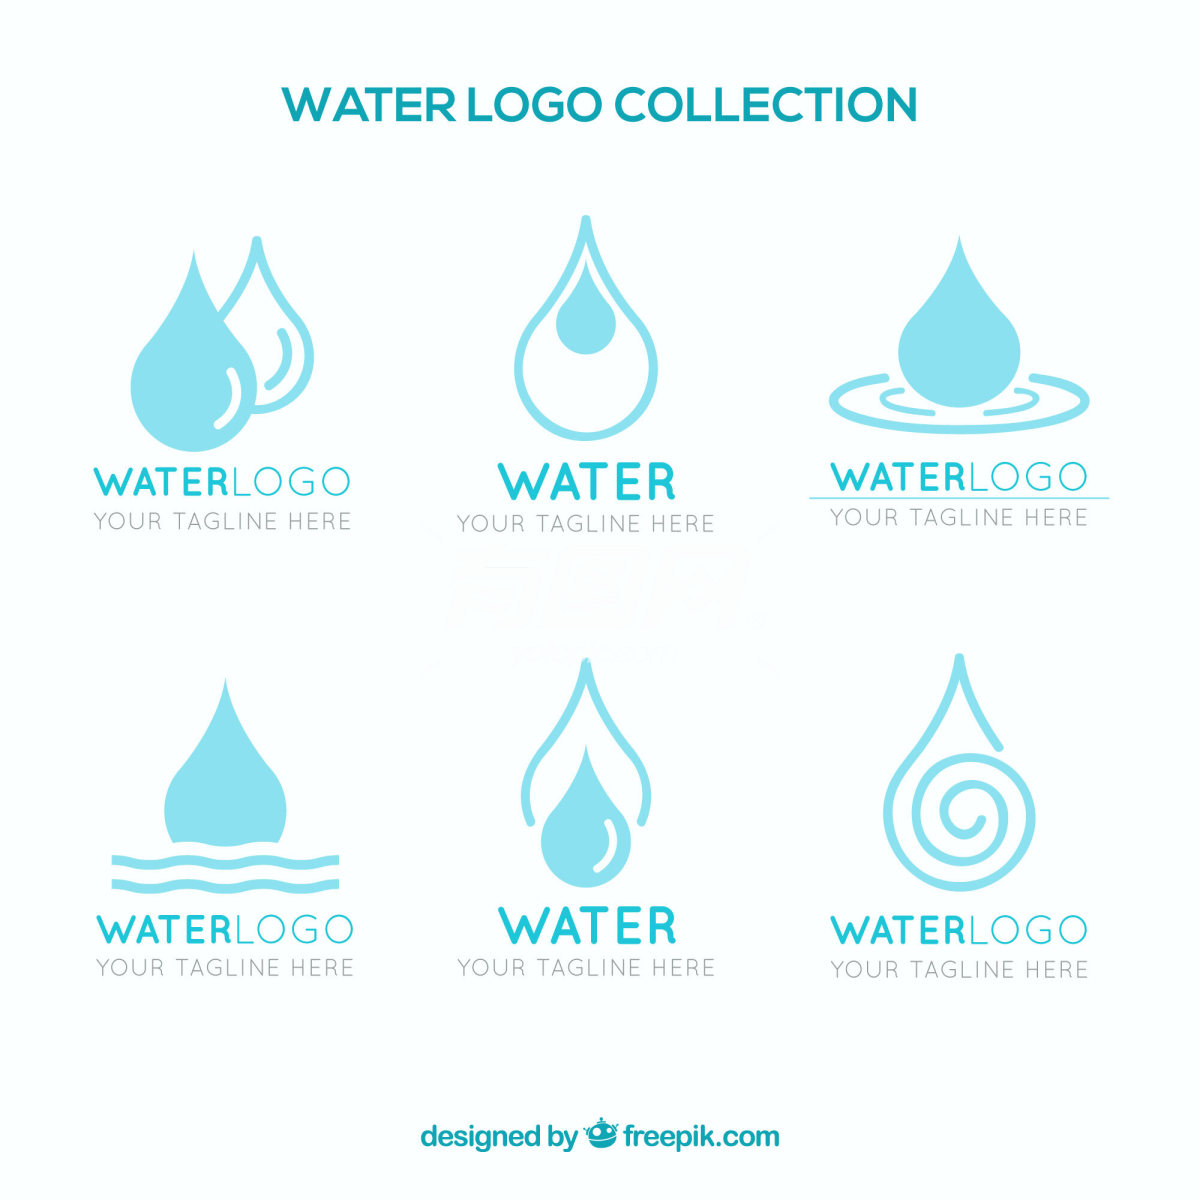 水滴形状的标志设计